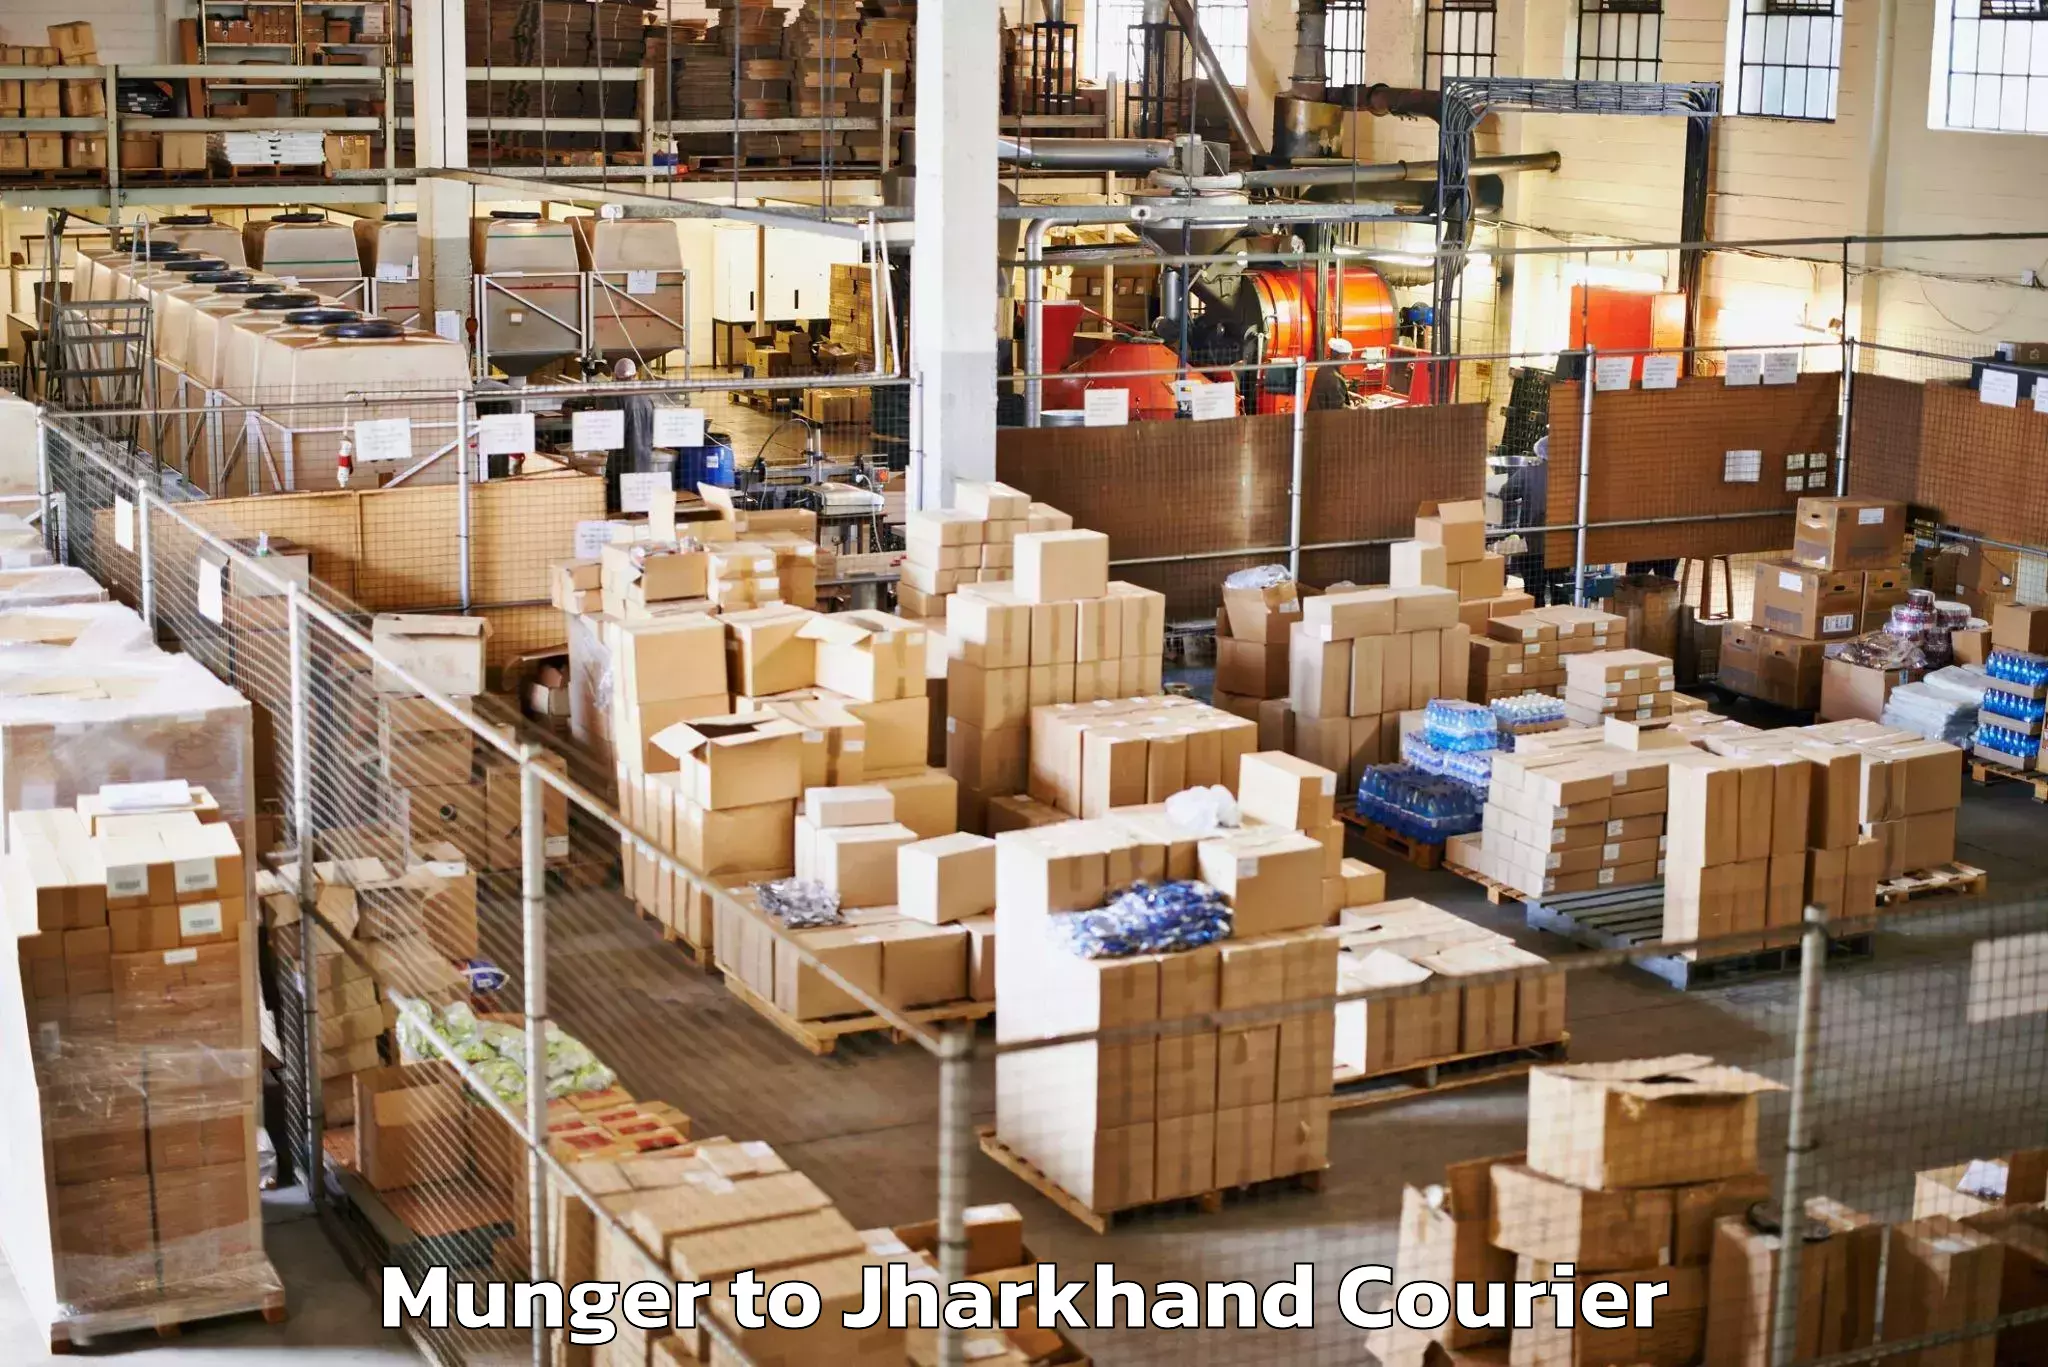 Baggage shipping service Munger to Peterbar